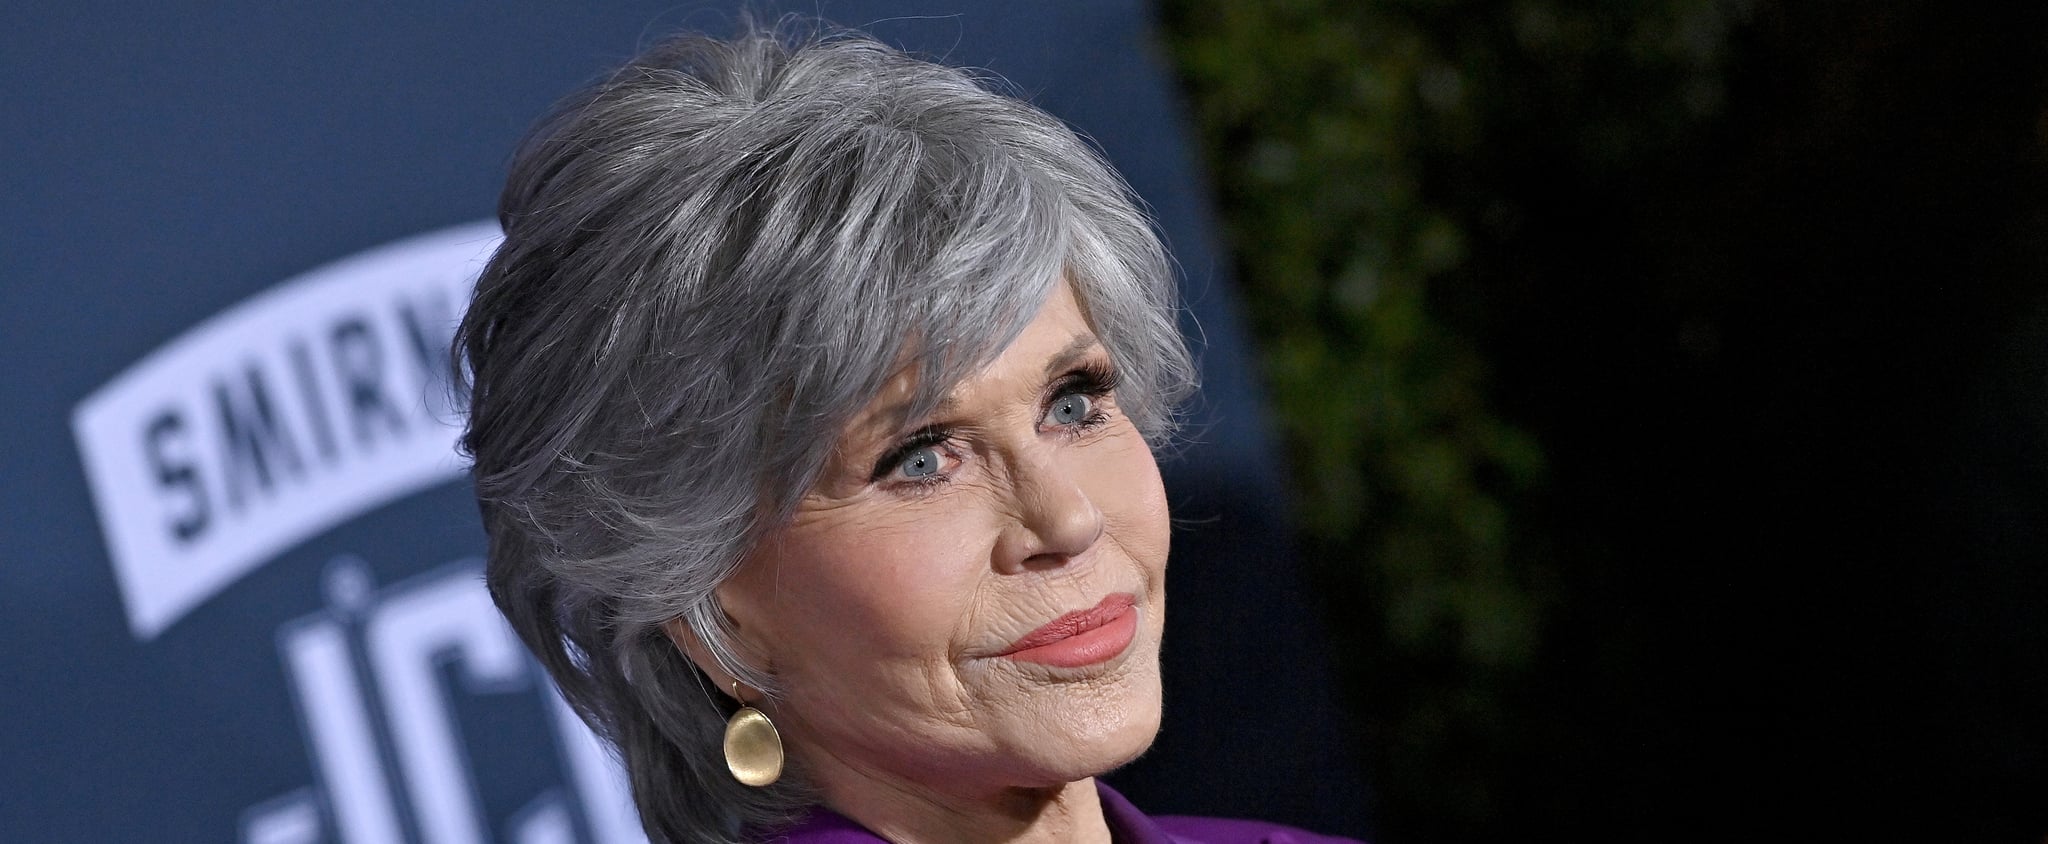 Jane Fonda Shares How She Overcame Her Eating Disorder